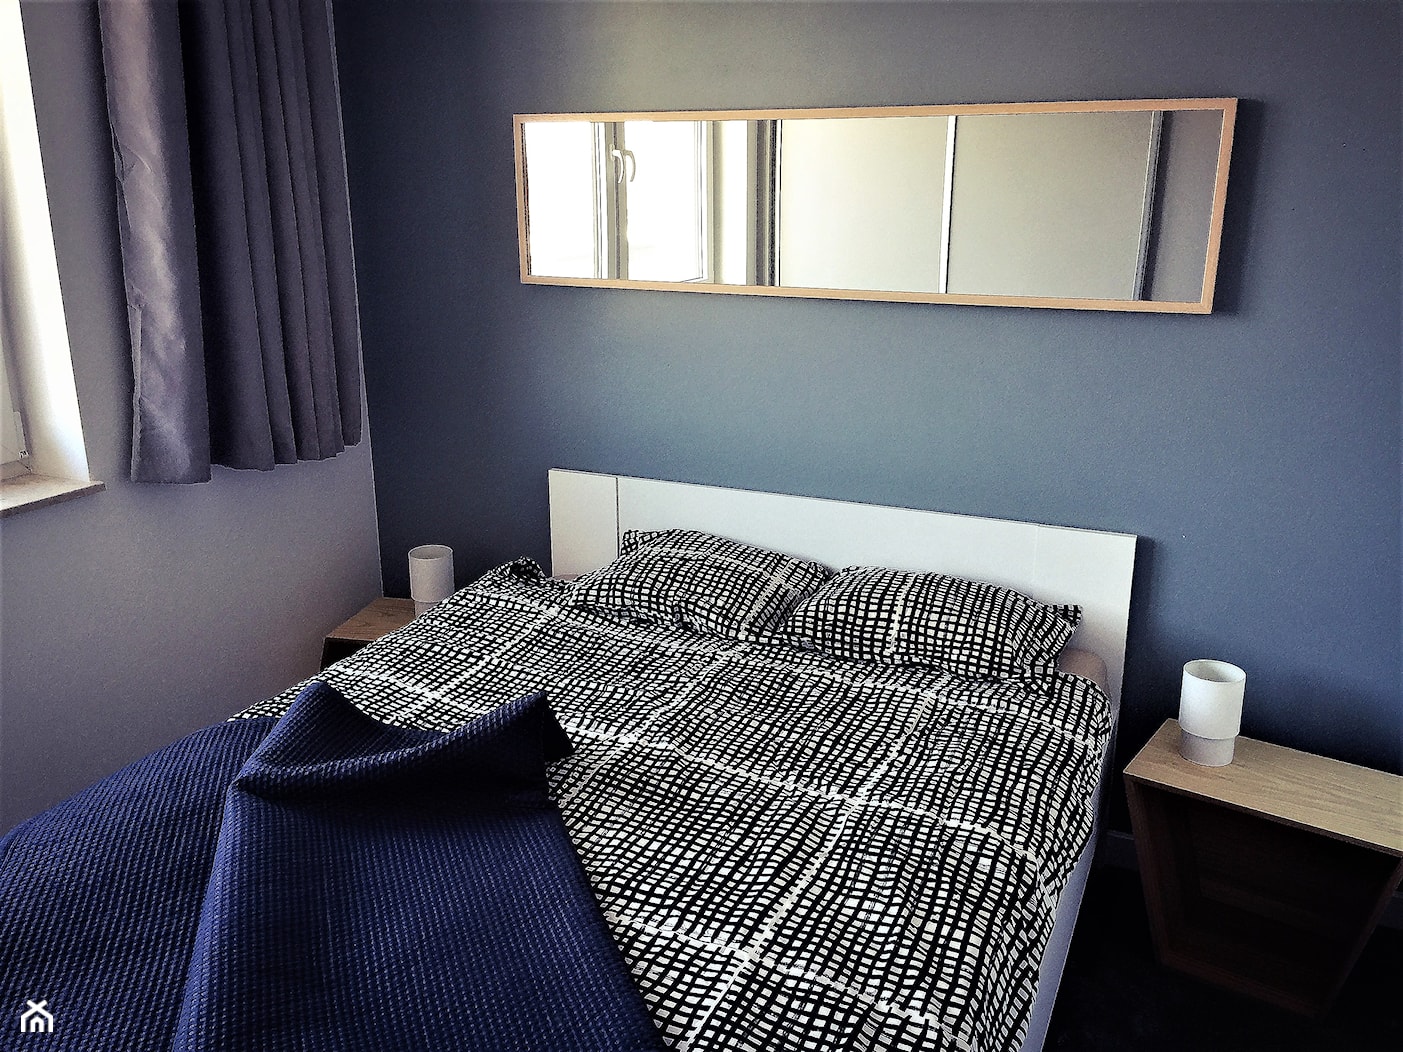 Realizacja w Promenadach Wrocławskich – mieszkanie na wynajem. - Mała niebieska szara sypialnia, styl nowoczesny - zdjęcie od DekoDeko - Homebook